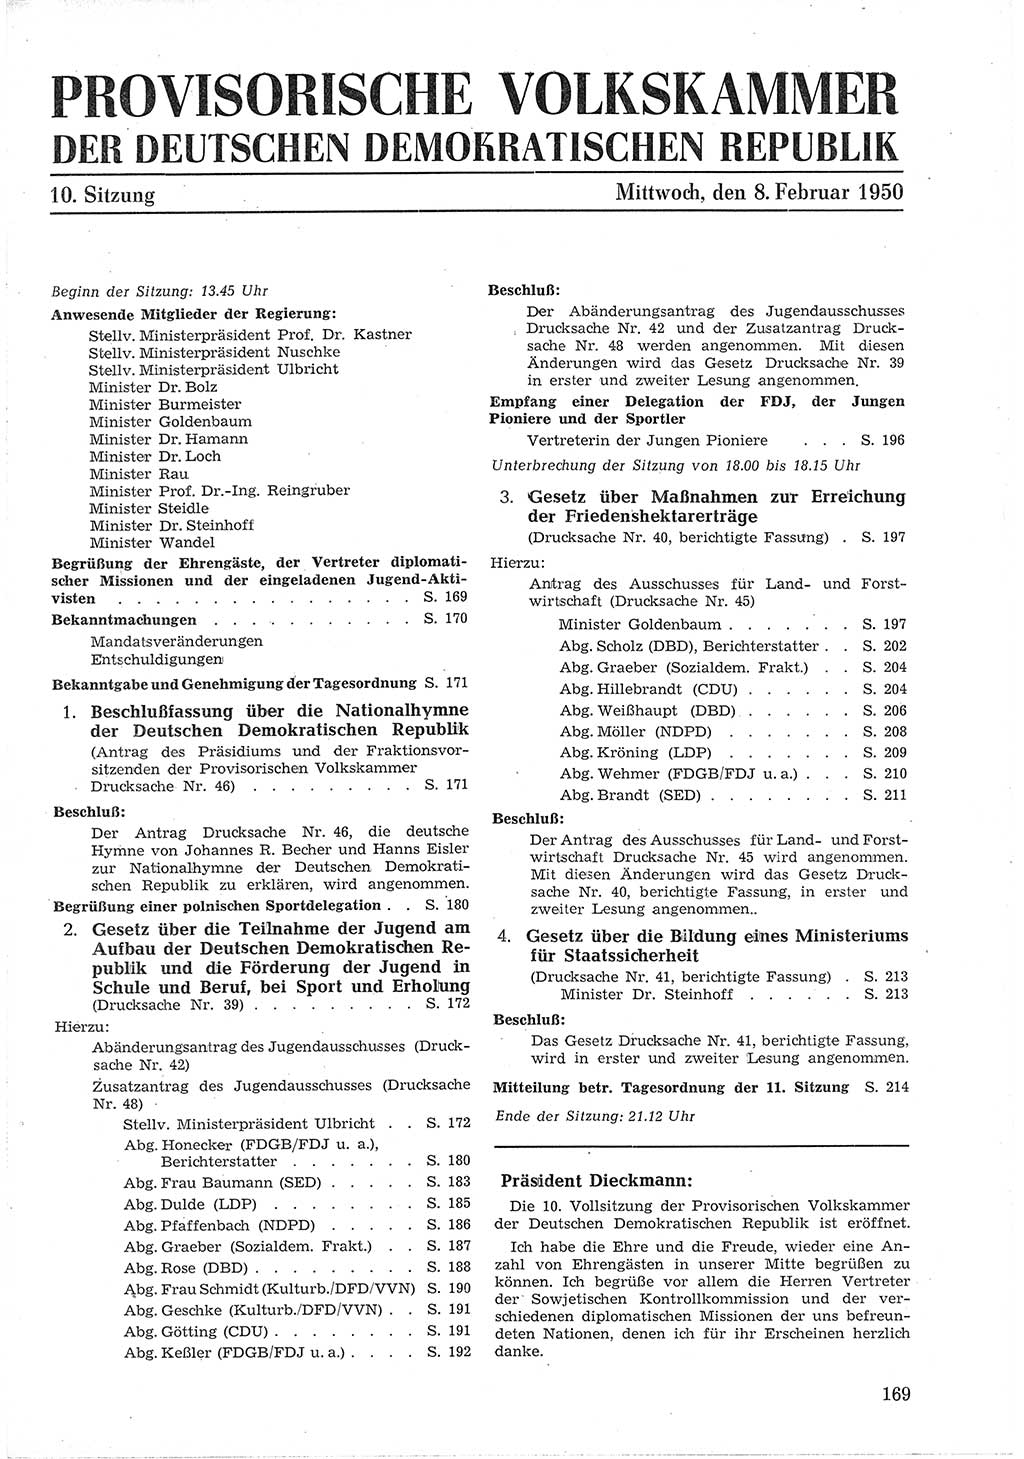 Provisorische Volkskammer (VK) der Deutschen Demokratischen Republik (DDR) 1949-1950, Dokument 181 (Prov. VK DDR 1949-1950, Dok. 181)